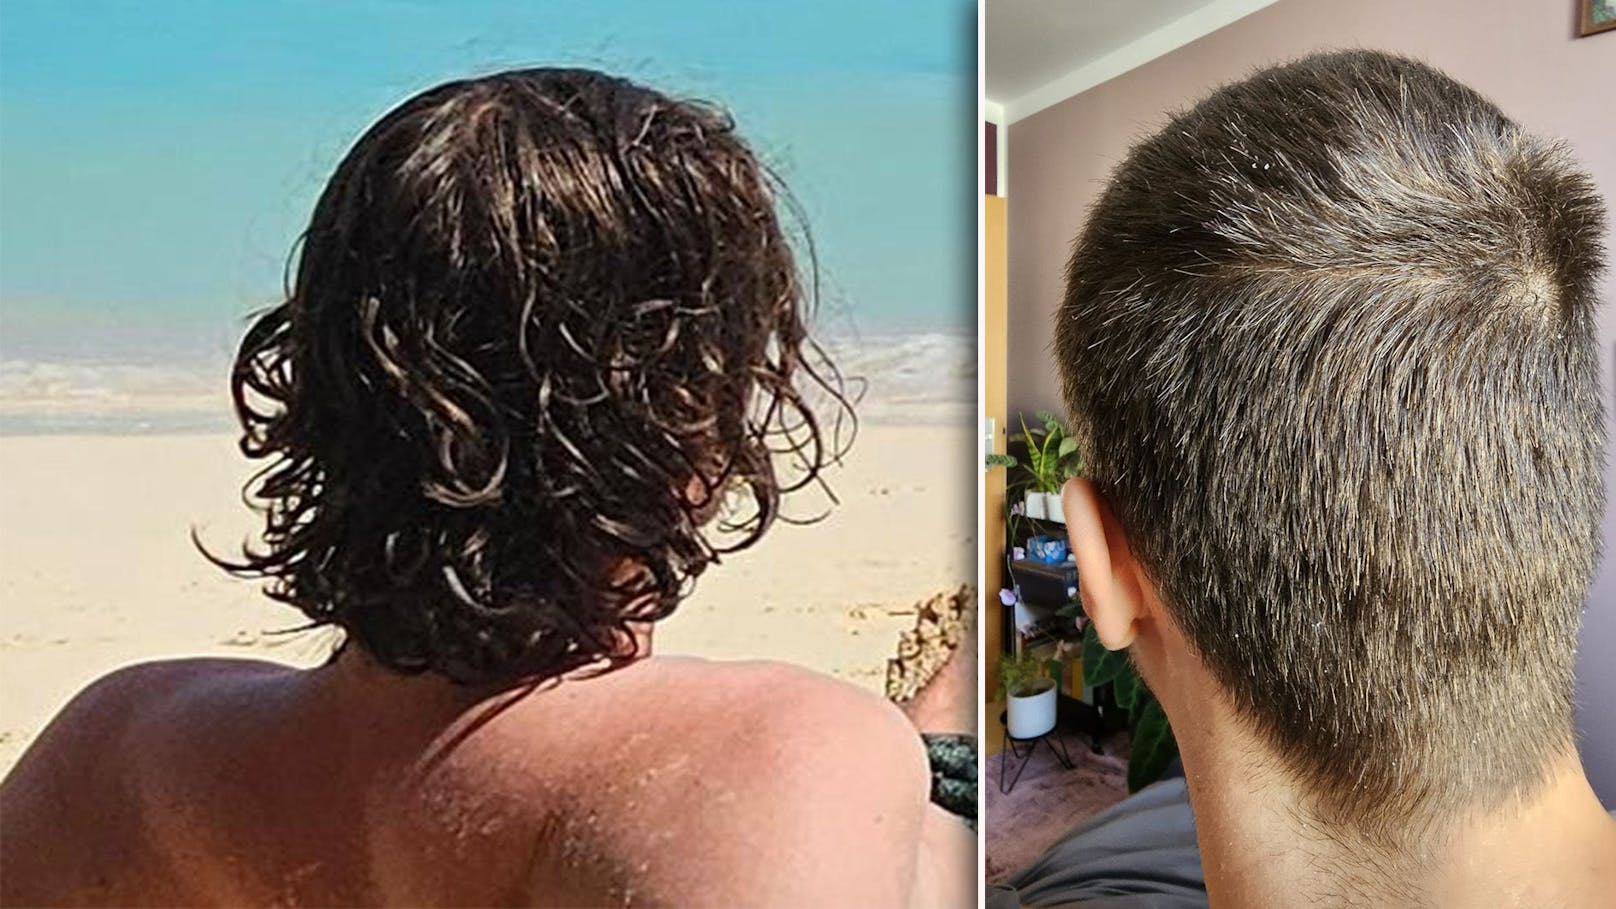 Friseur "ruiniert" Mann das Haar, Freundin ruft Polizei